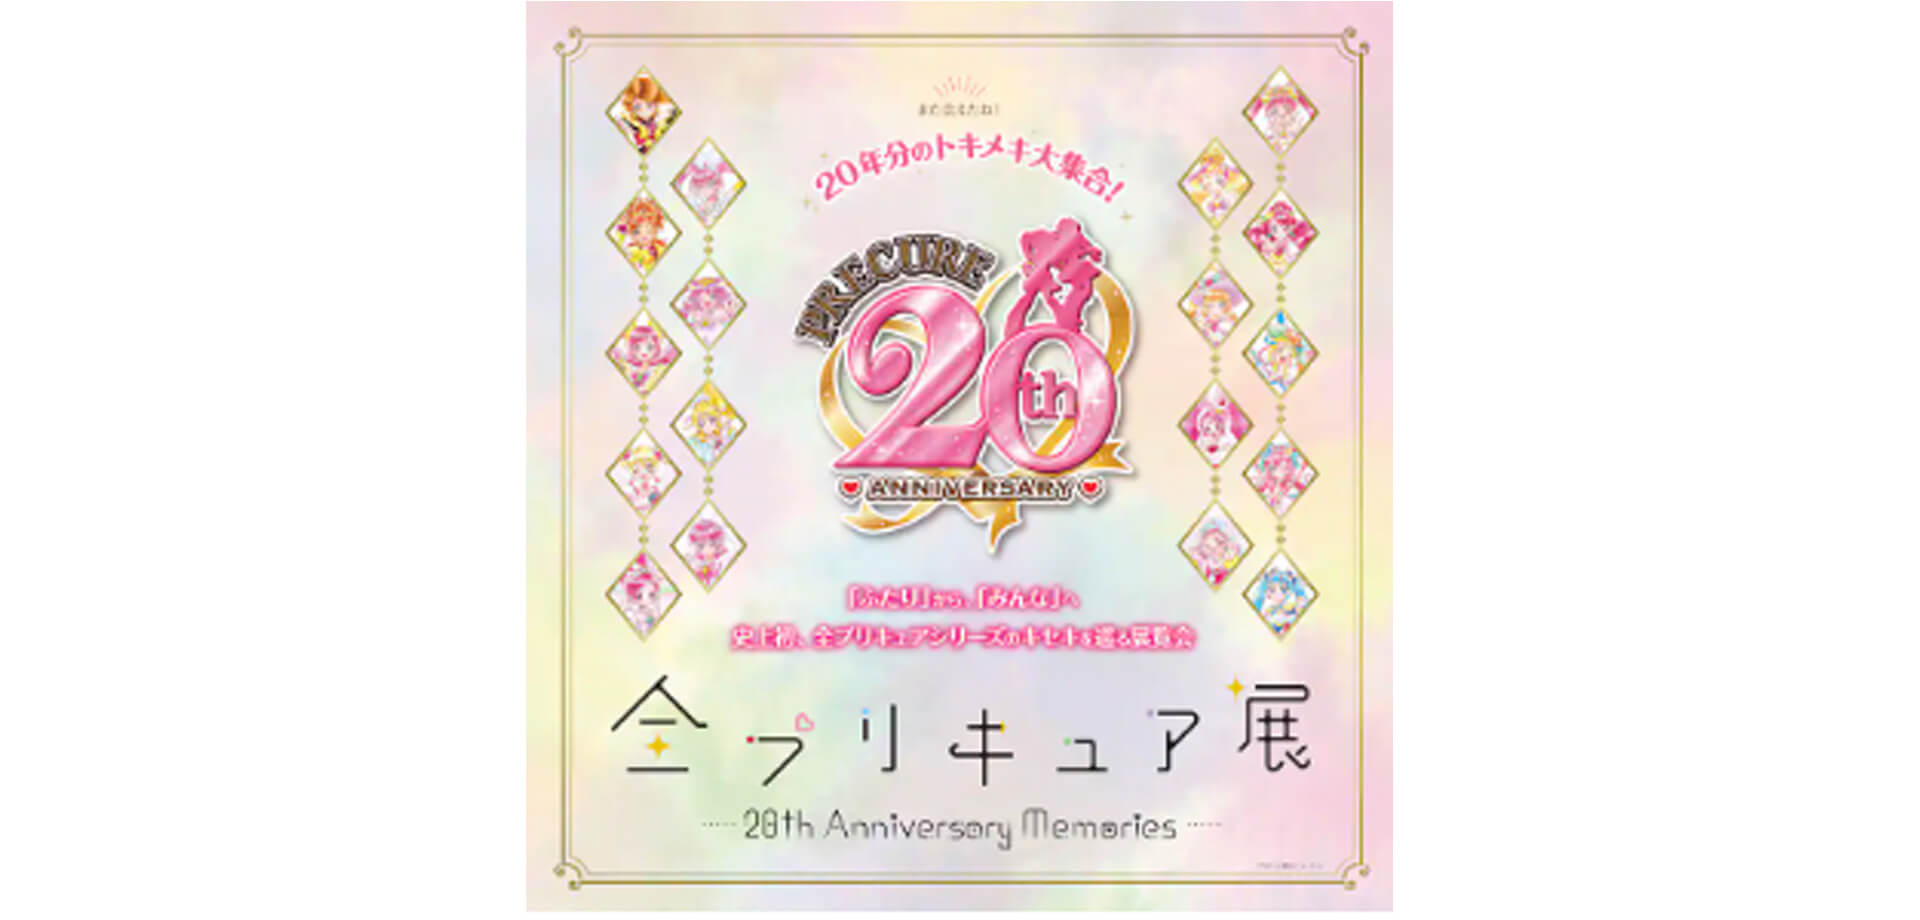 全プリキュア展～20th Anniversary Memories～ バナー